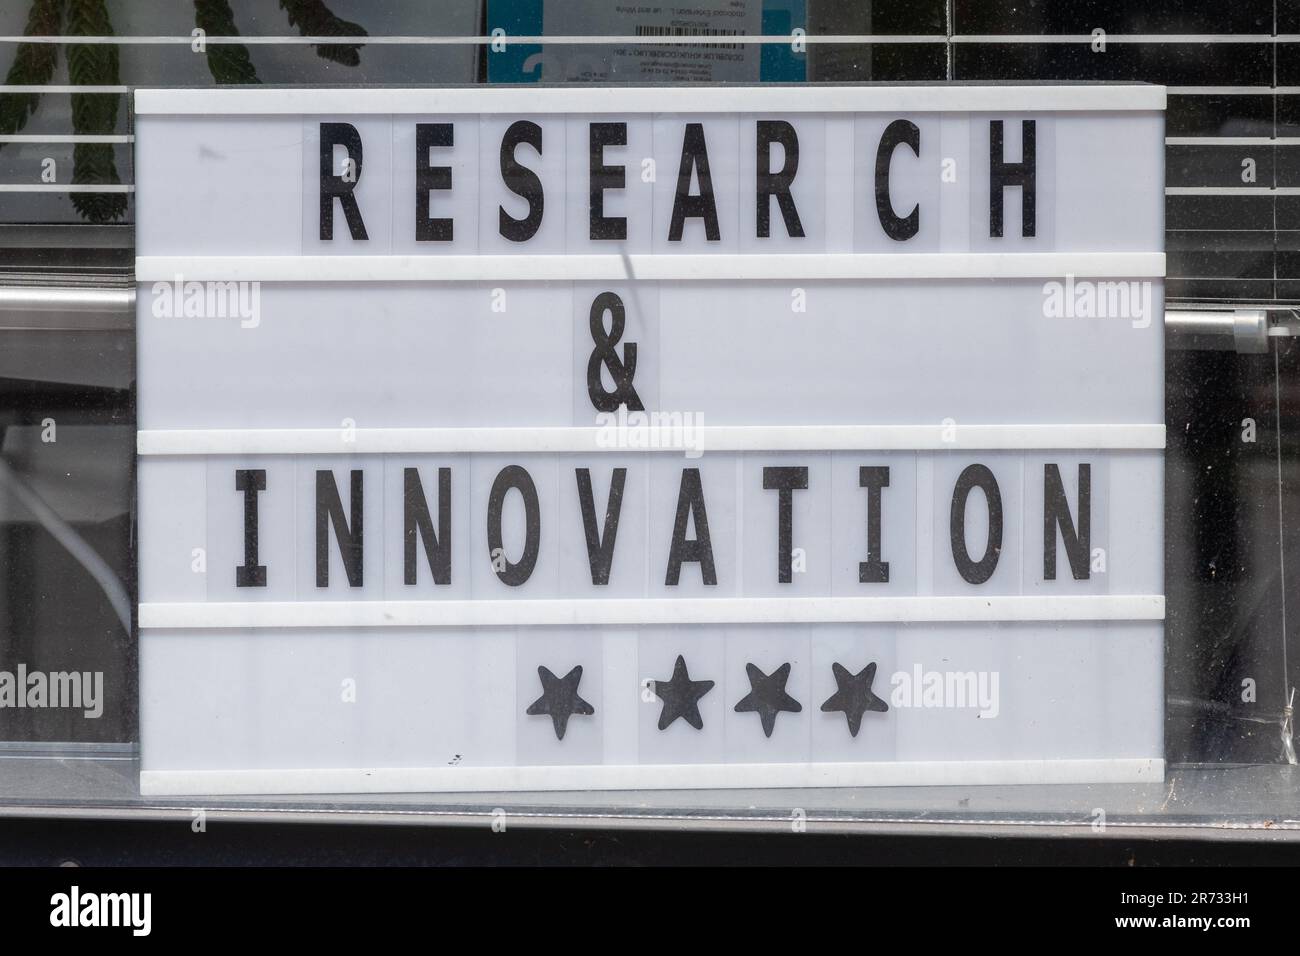 Research and Innovation die 4-Sterne-Bewertung wird im Schaufenster der University of Portsmouth, Hampshire, England, Großbritannien, angezeigt Stockfoto